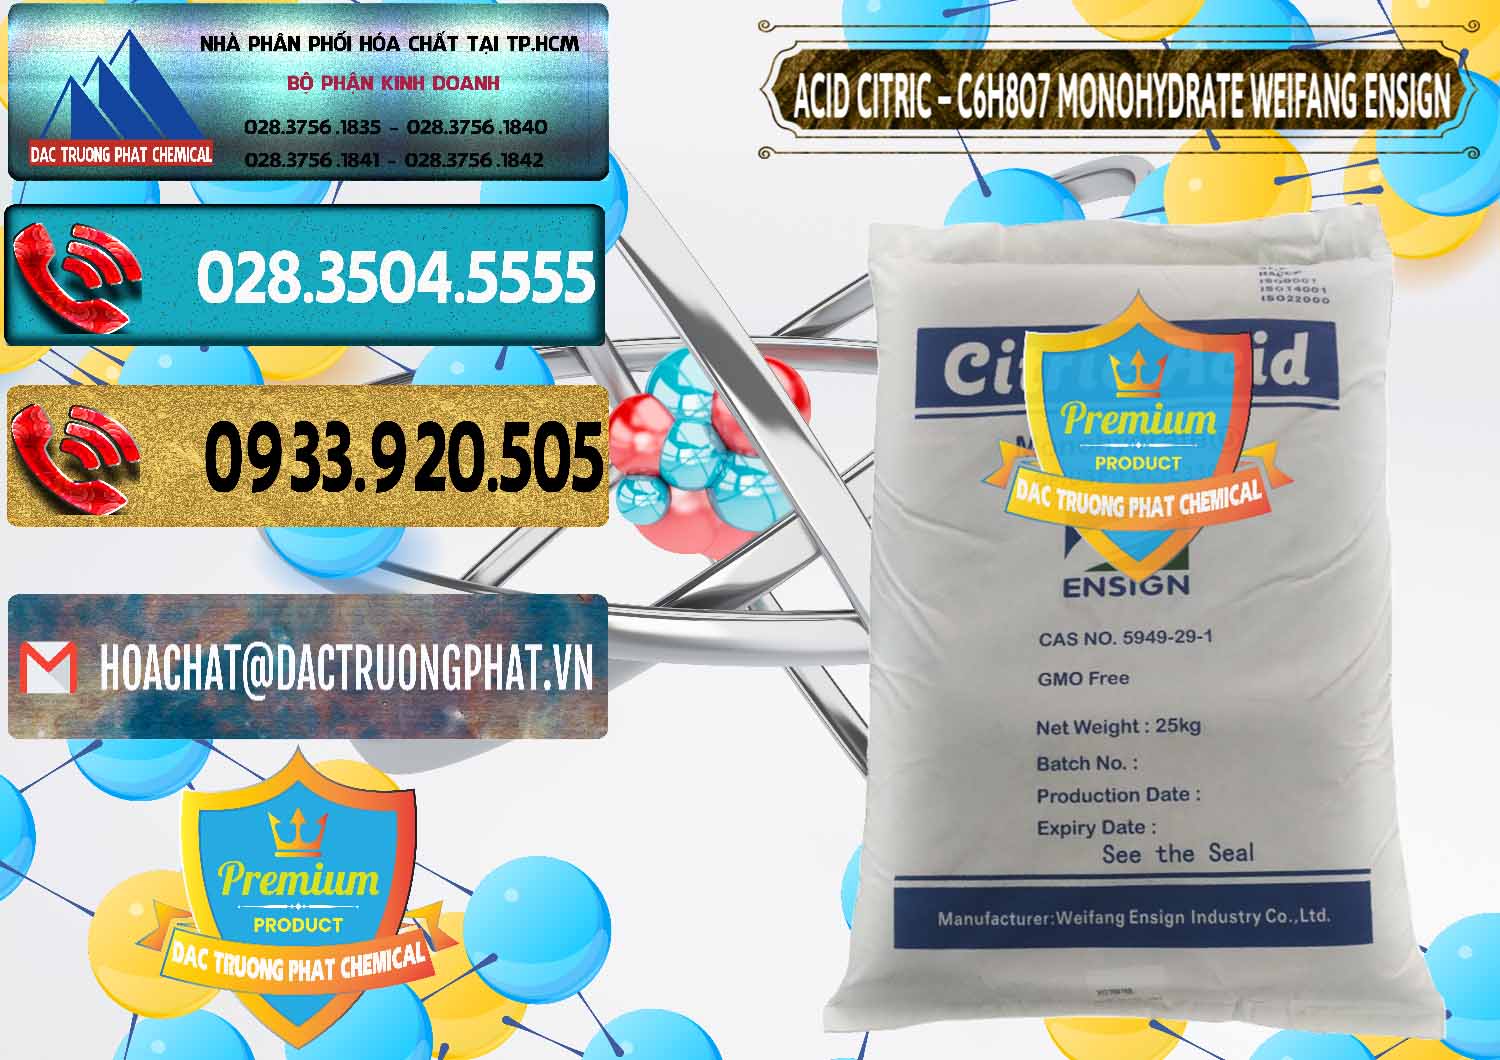 Cty chuyên bán và cung cấp Acid Citric - Axit Citric Monohydrate Weifang Trung Quốc China - 0009 - Cty chuyên cung cấp và bán hóa chất tại TP.HCM - hoachatdetnhuom.com